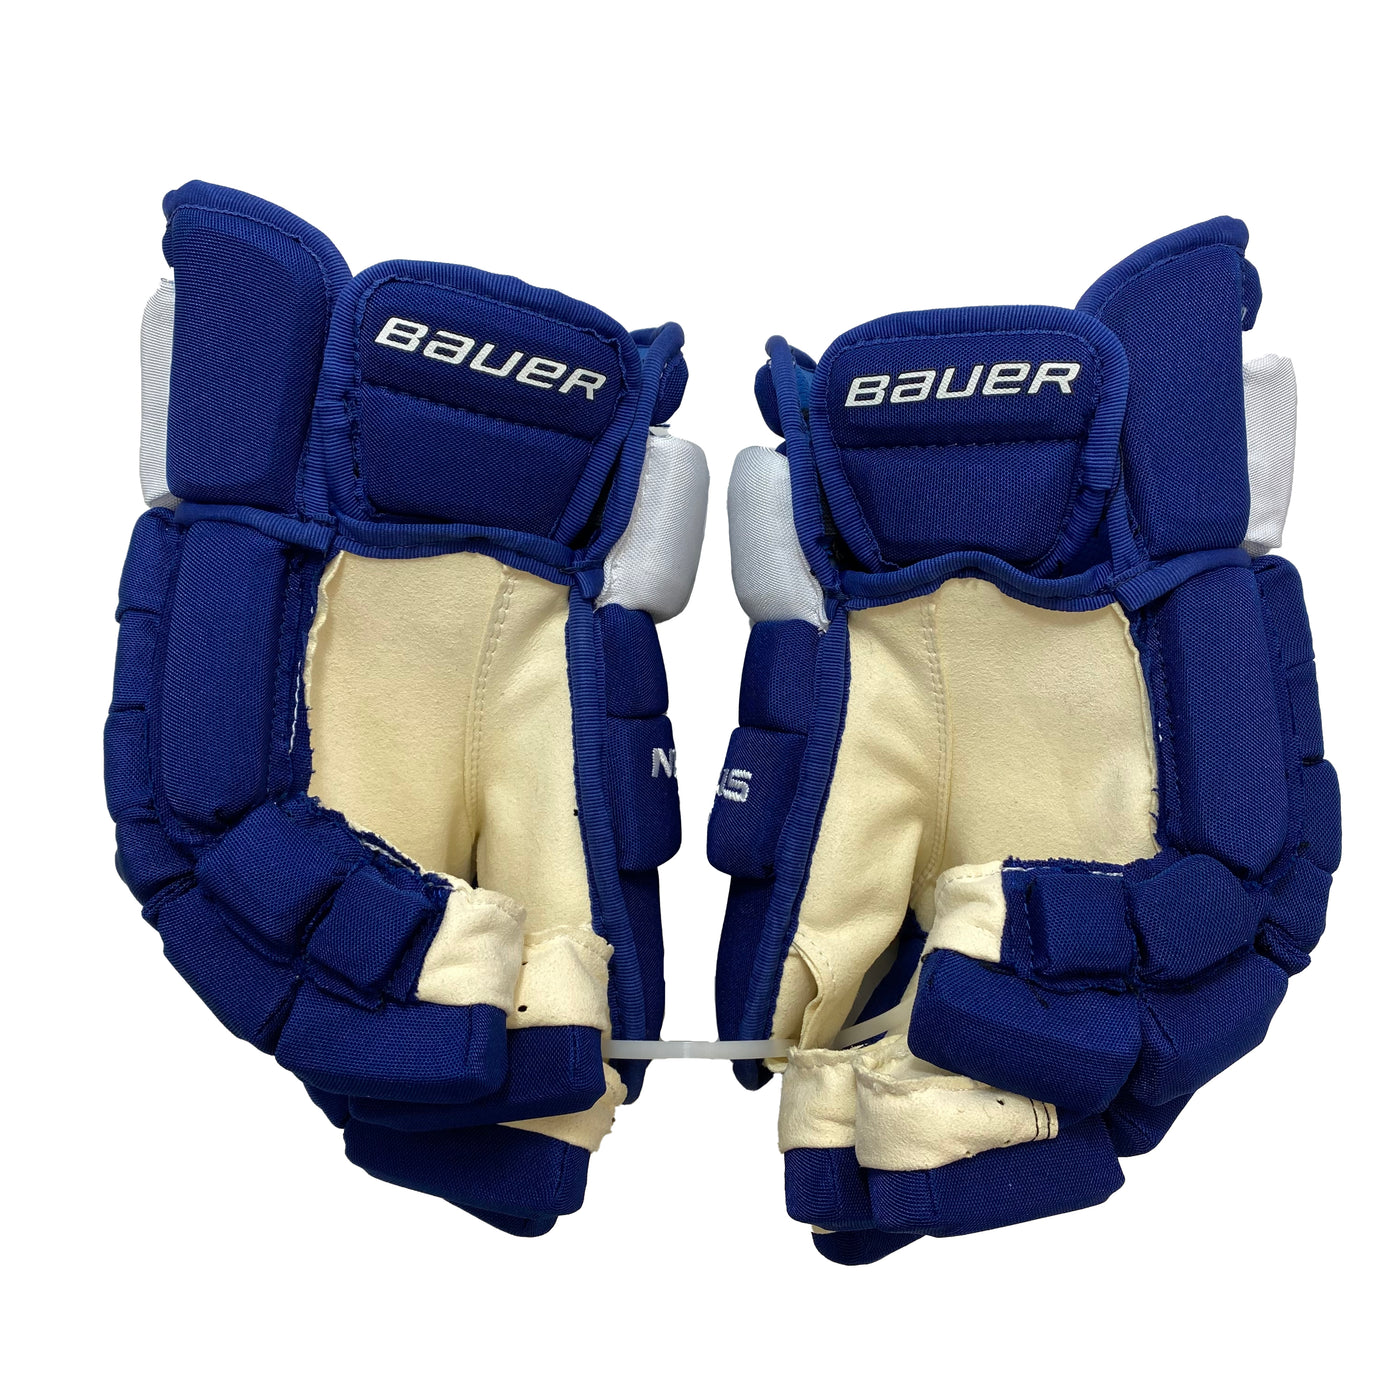 Bauer Nexus 1N - Toronto Maple Leafs - Pro Stock Hockey Gloves - Team Issue